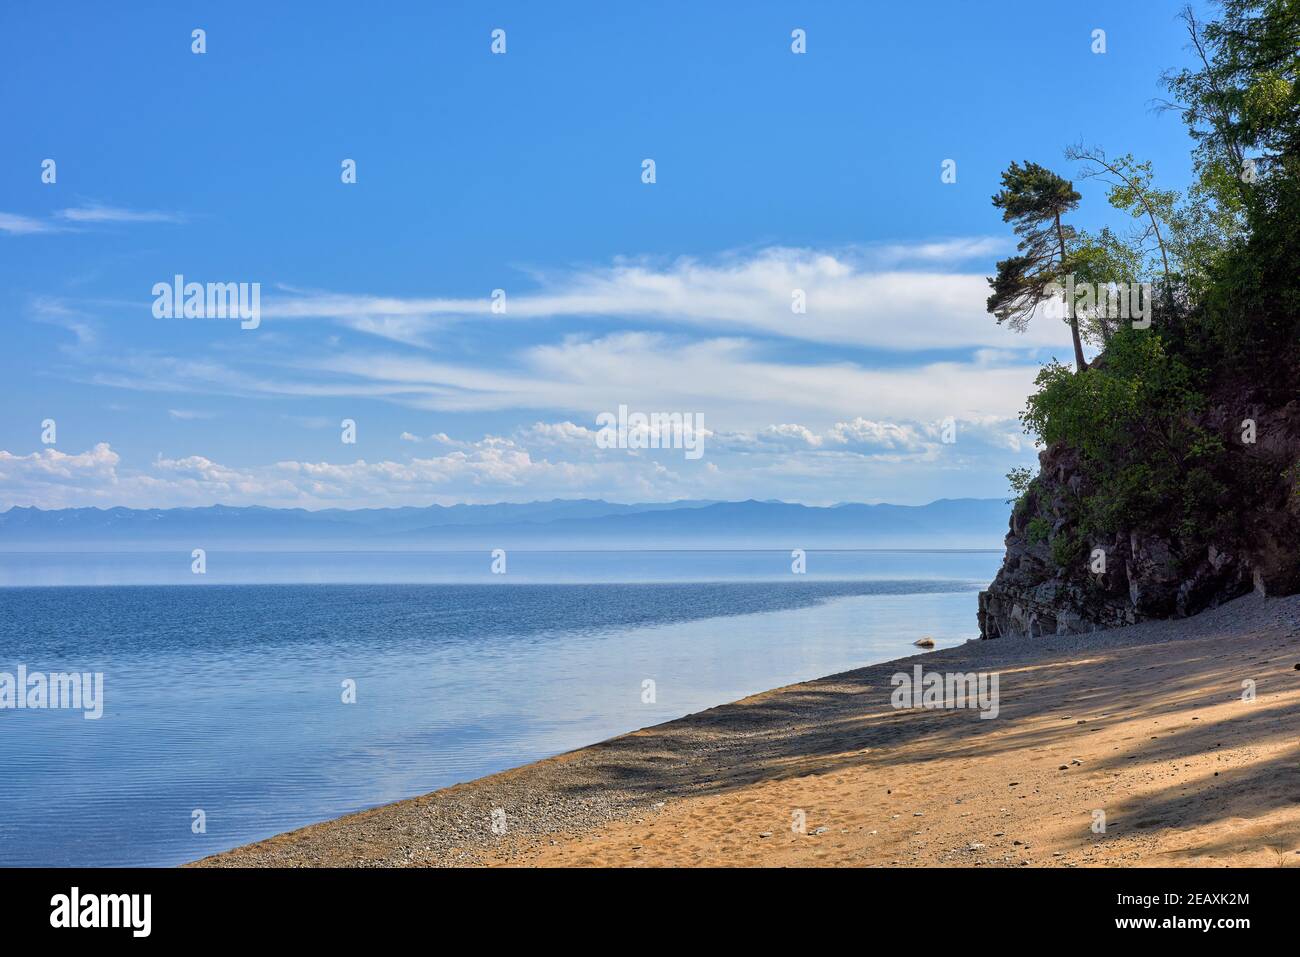 Das sandige Ufer des Baikalsees. Schöne Landschaft mit Fernsicht auf die Bergkette am gegenüberliegenden Ufer. Juni. Region Irkutsk. Östliche Sib Stockfoto